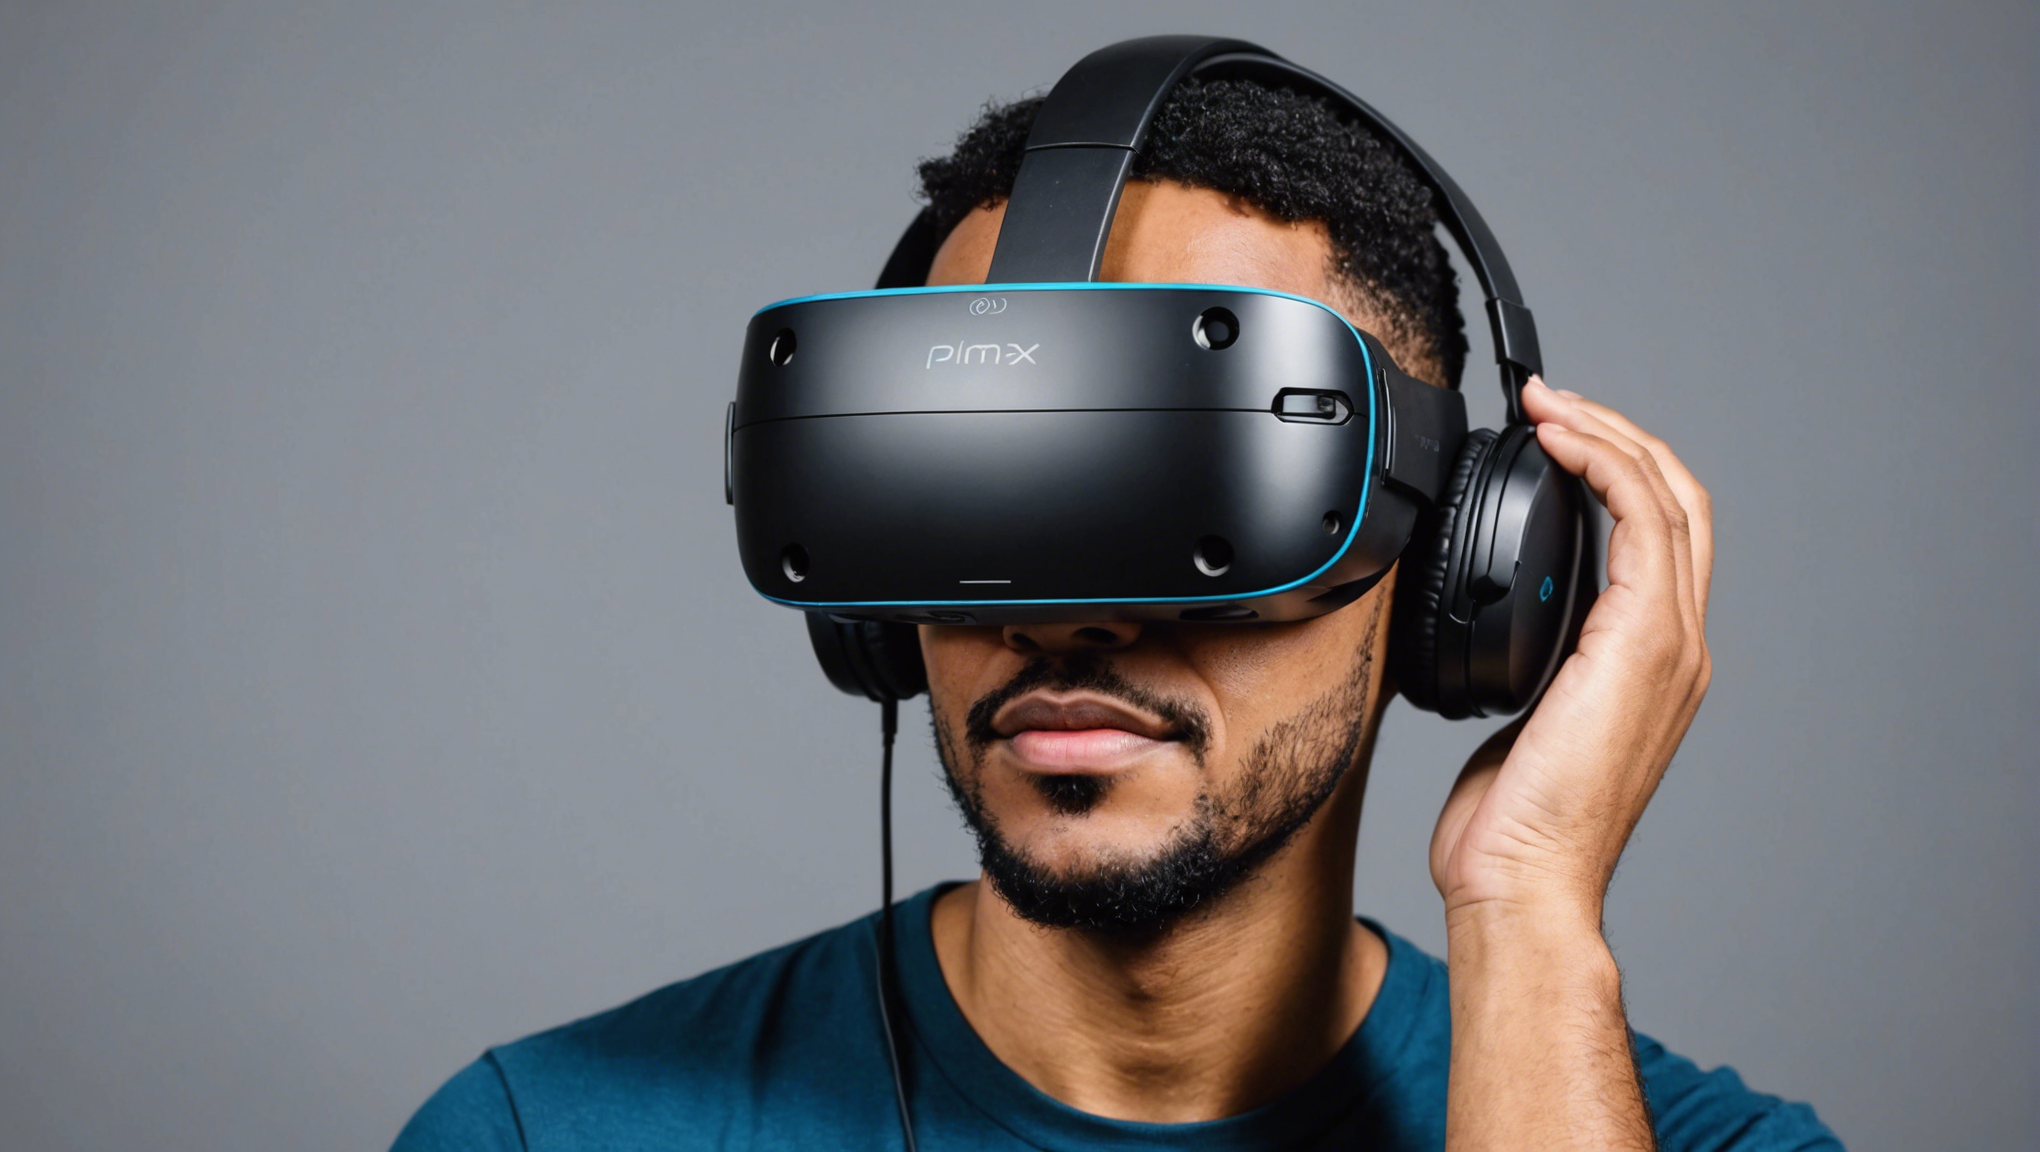 découvrez le casque de réalité virtuelle pimax 8kx, une révolution technologique qui promet une expérience immersive hors du commun.